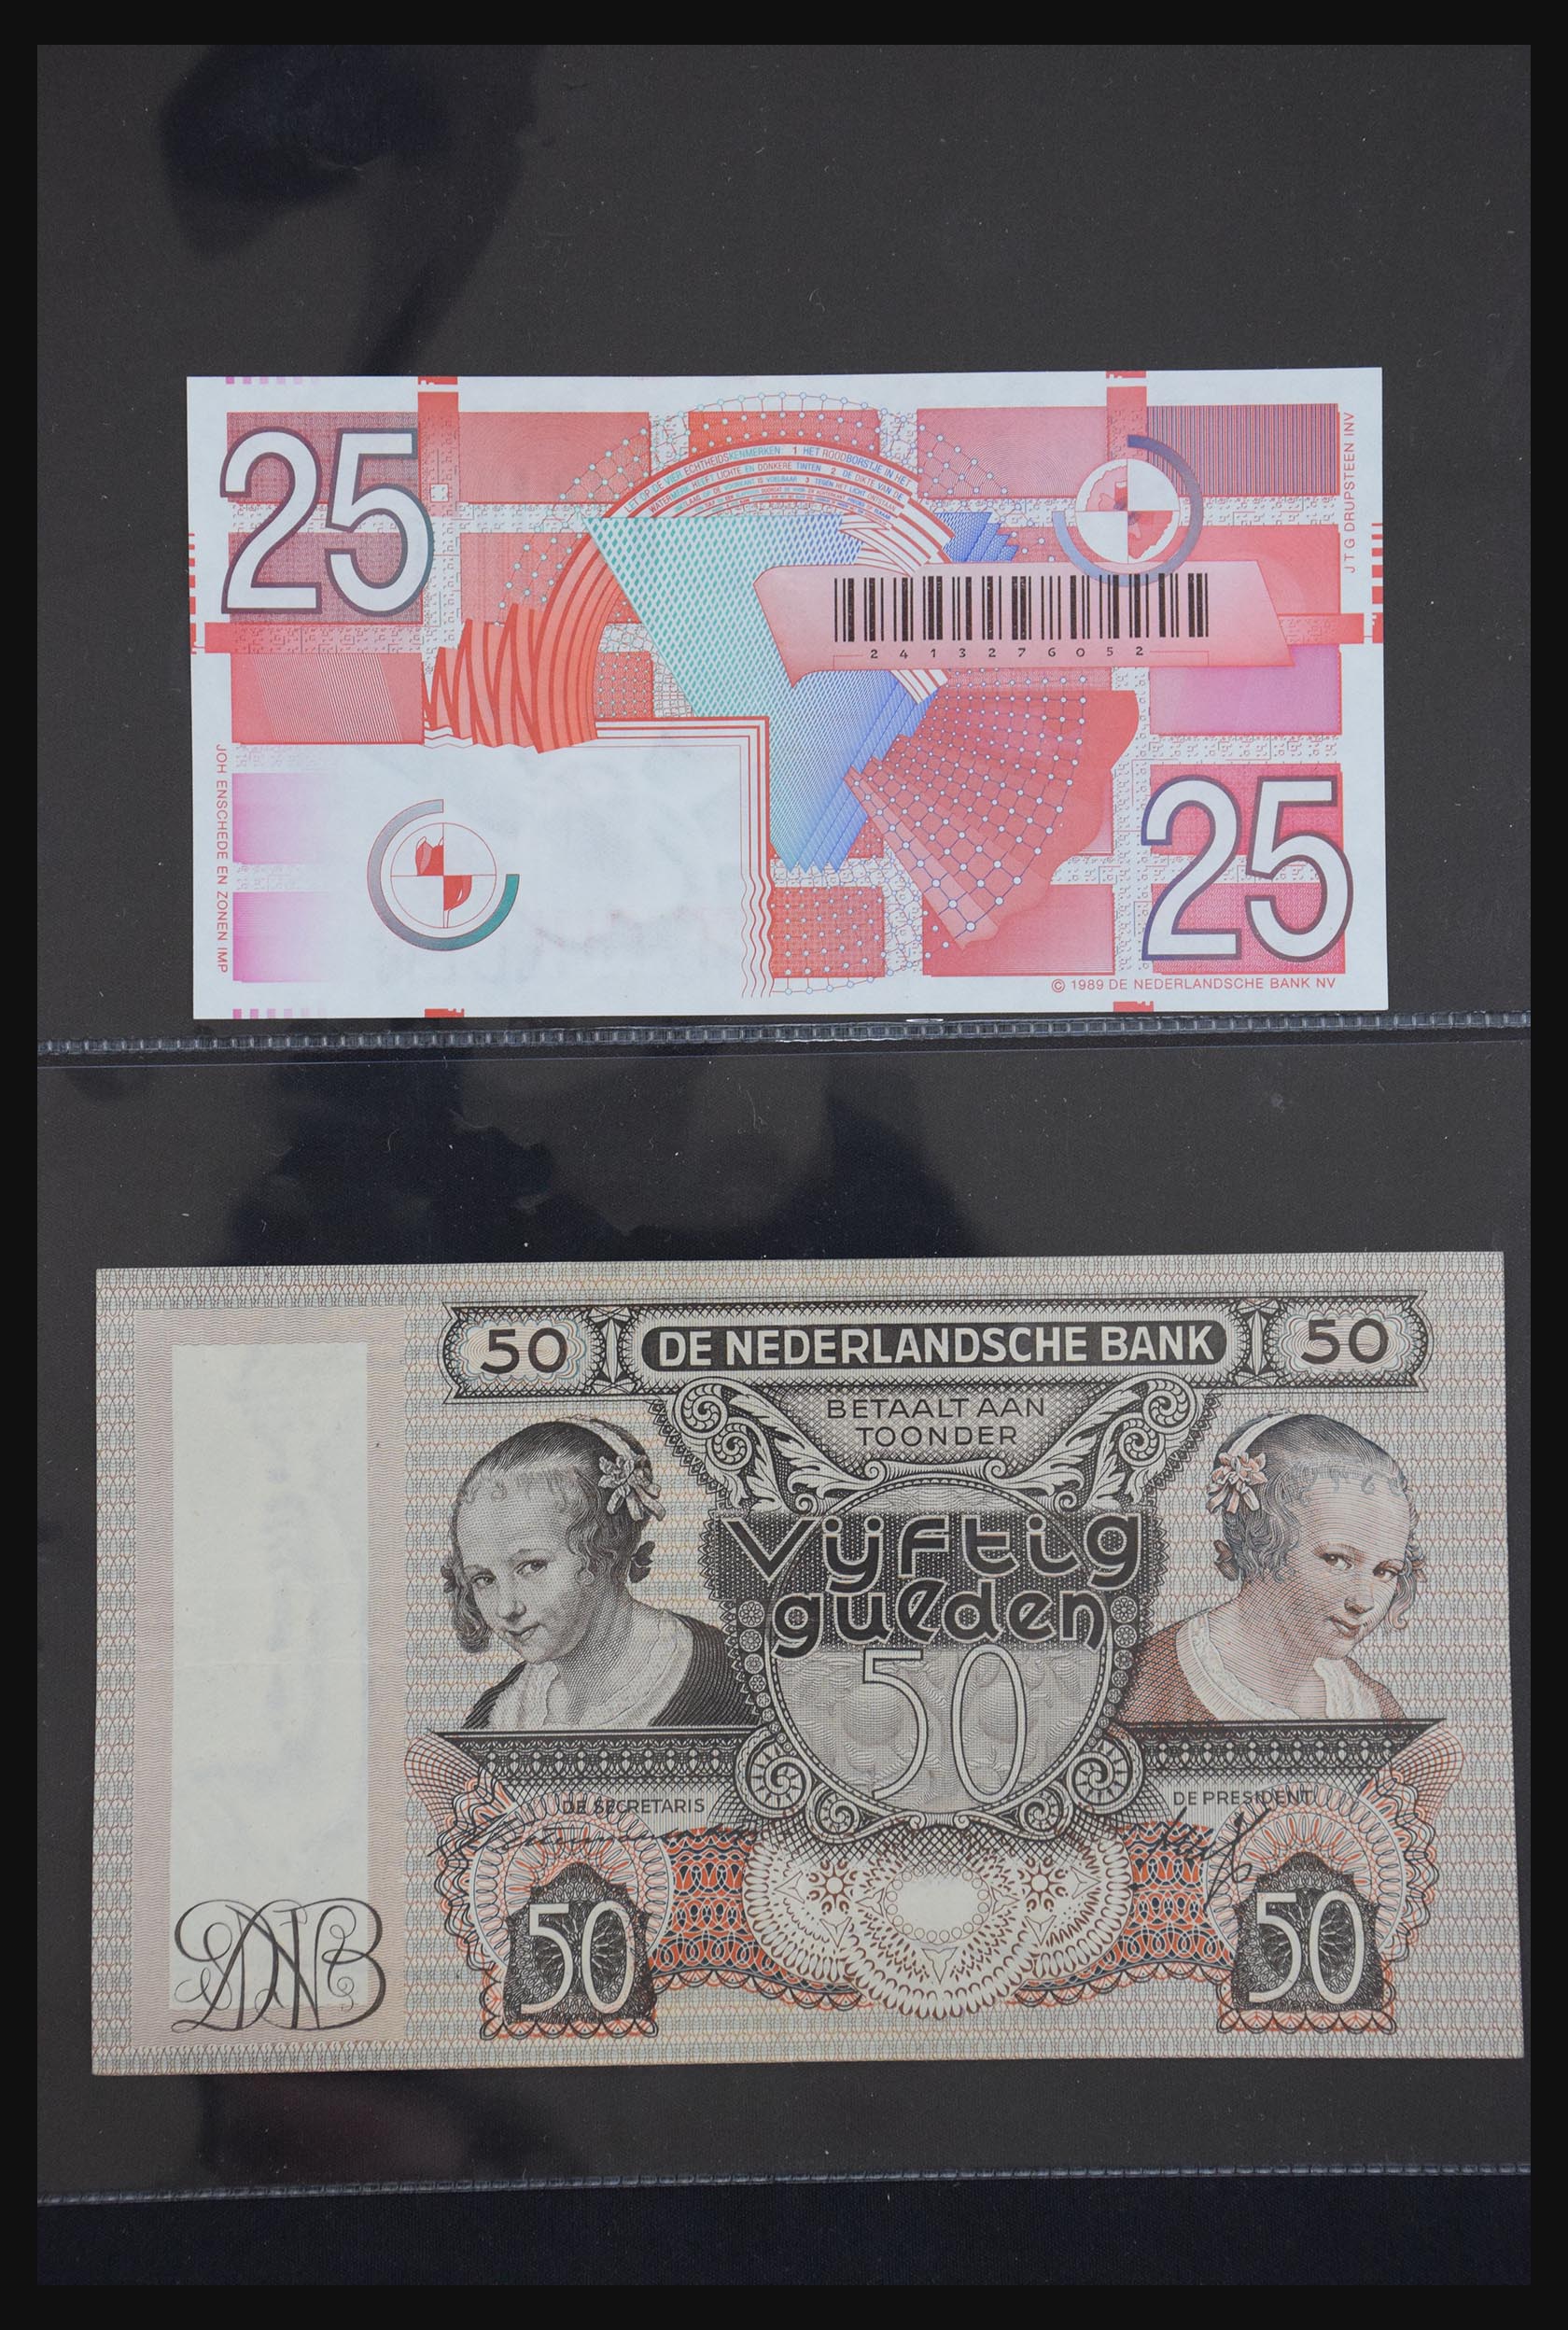 29404 037 - 29404 Netherlands banknotes 1924-1997.